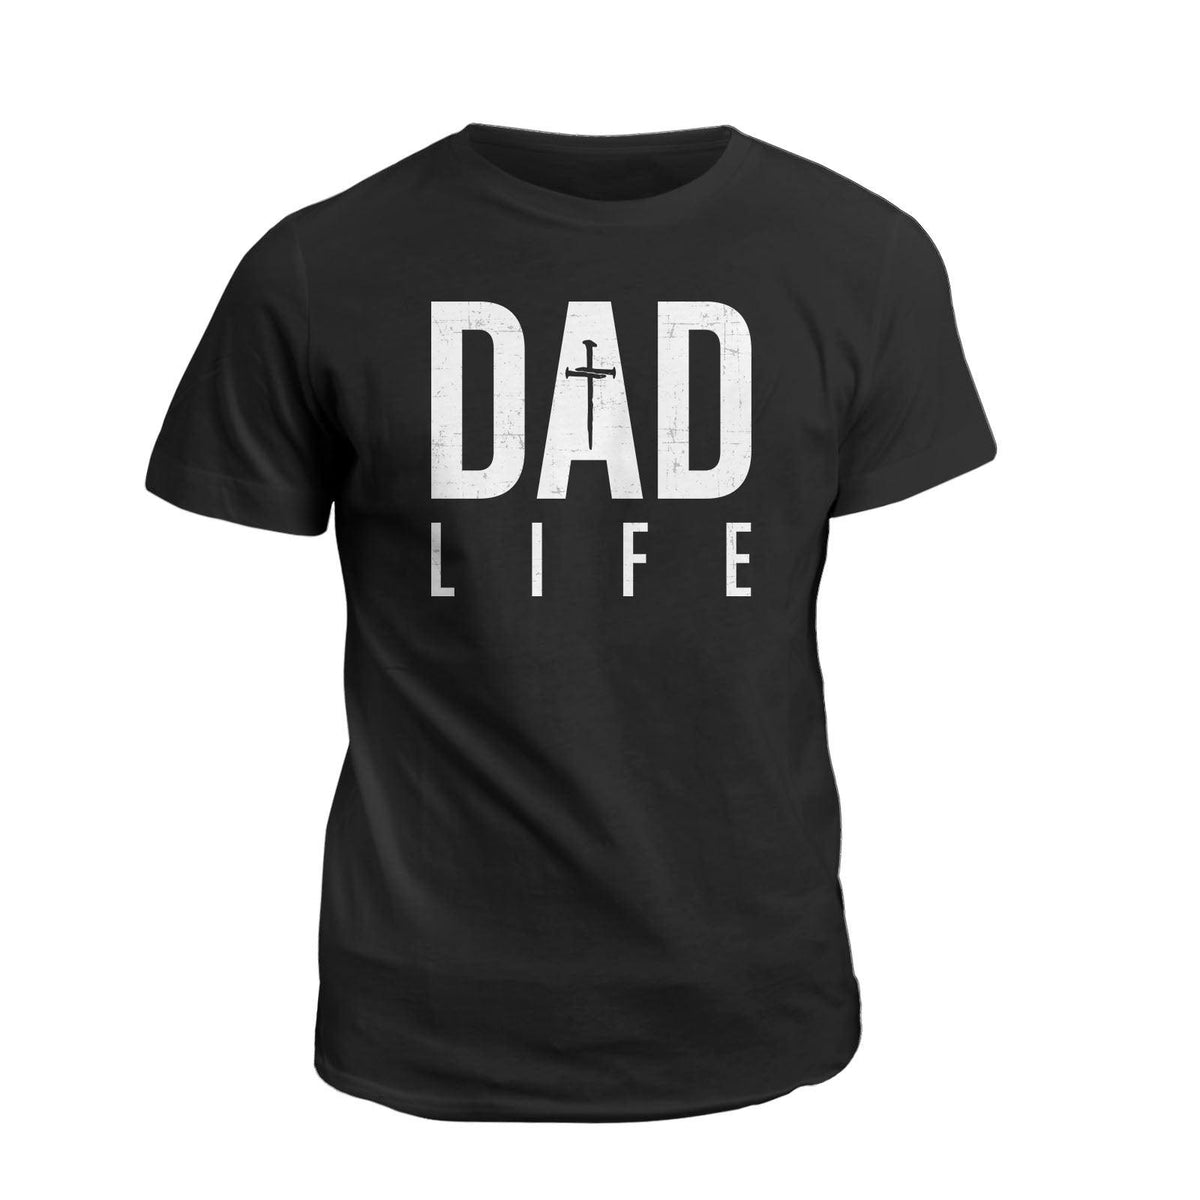 Dad Life - Our True God